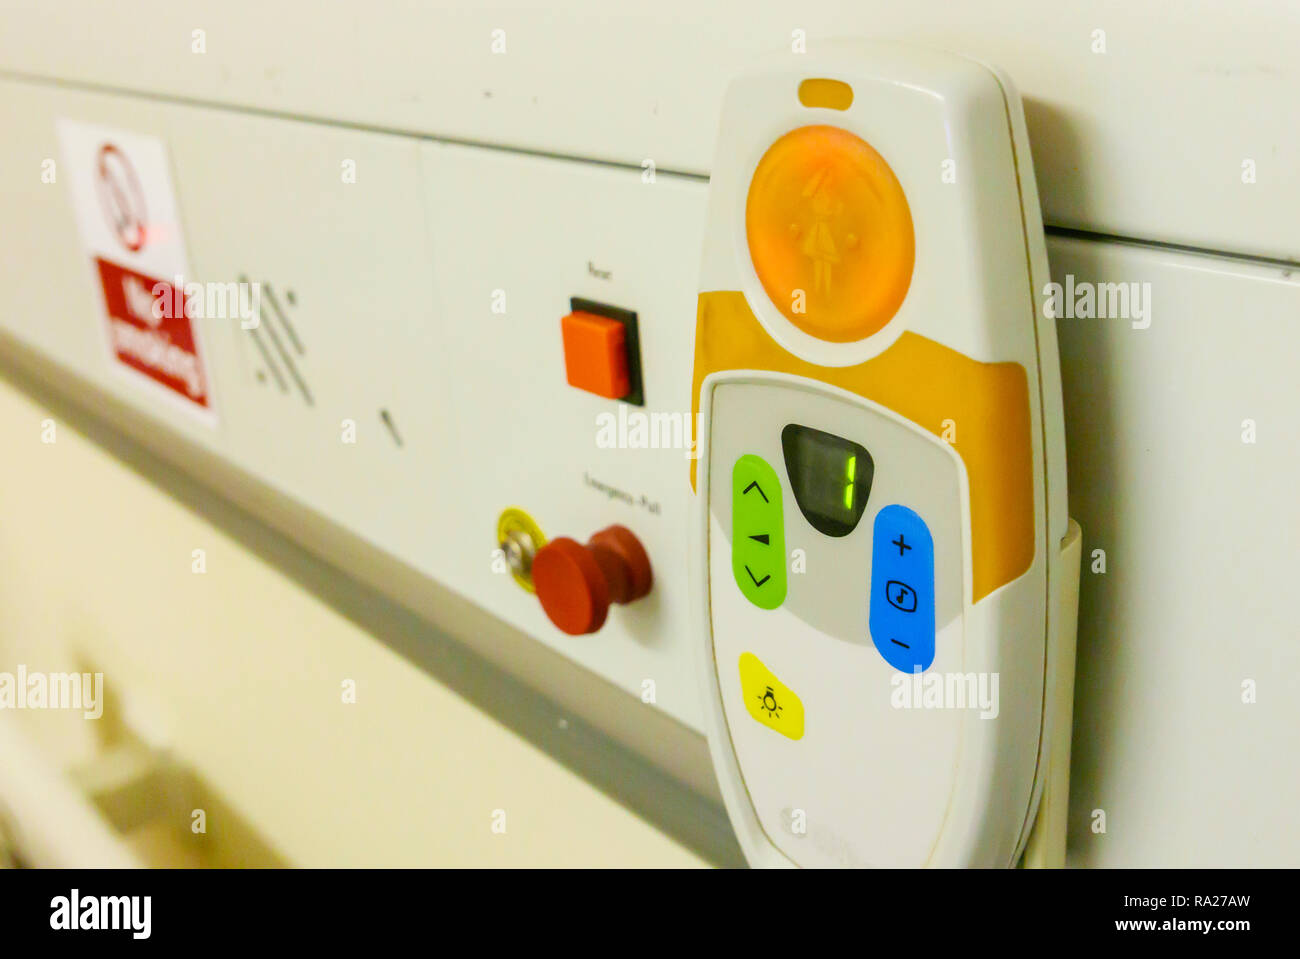 Unidad de cabezal de cama en un hospital mostrando una emergencia rojo tire de timbre de llamada y un punto de descarga electrostática. Foto de stock